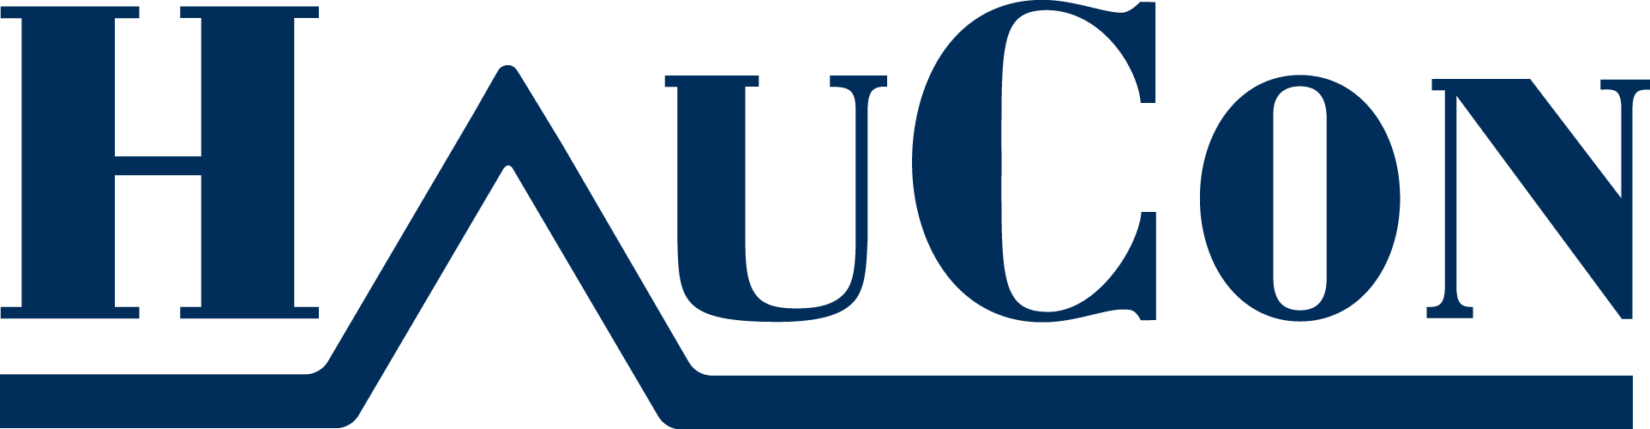 Logo til HauCon